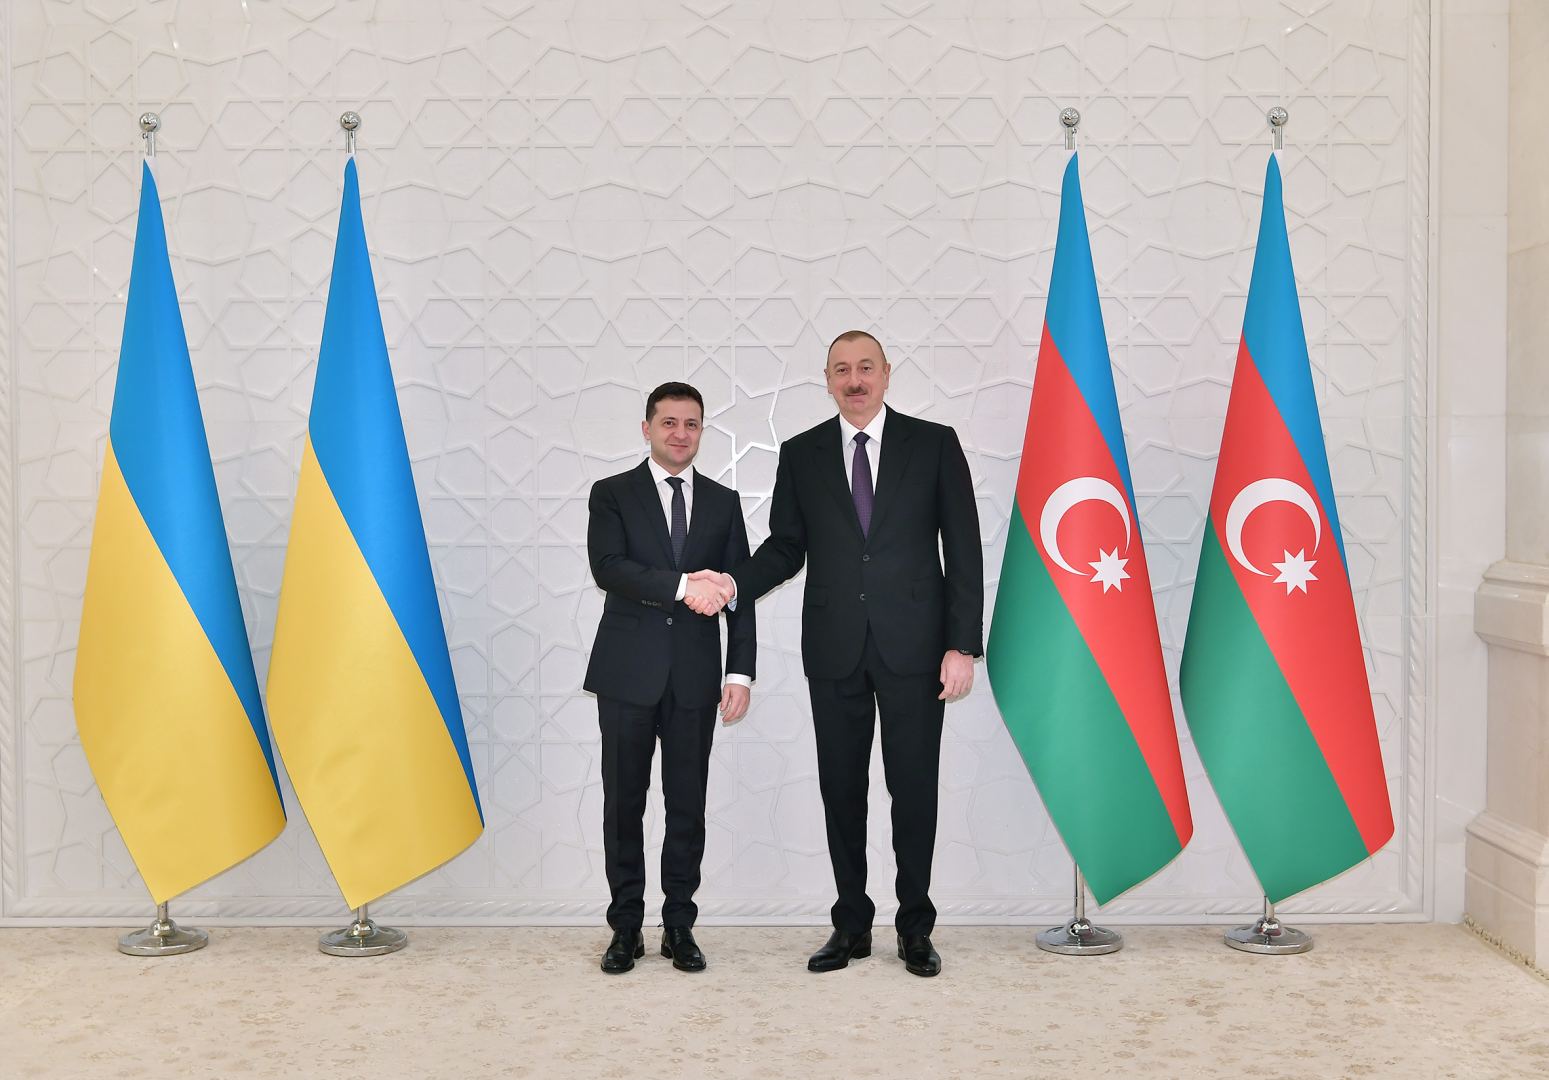 Ukraine’s President Volodymyr Zelensky makes phone call to Azerbaijan’s President Ilham Aliyev